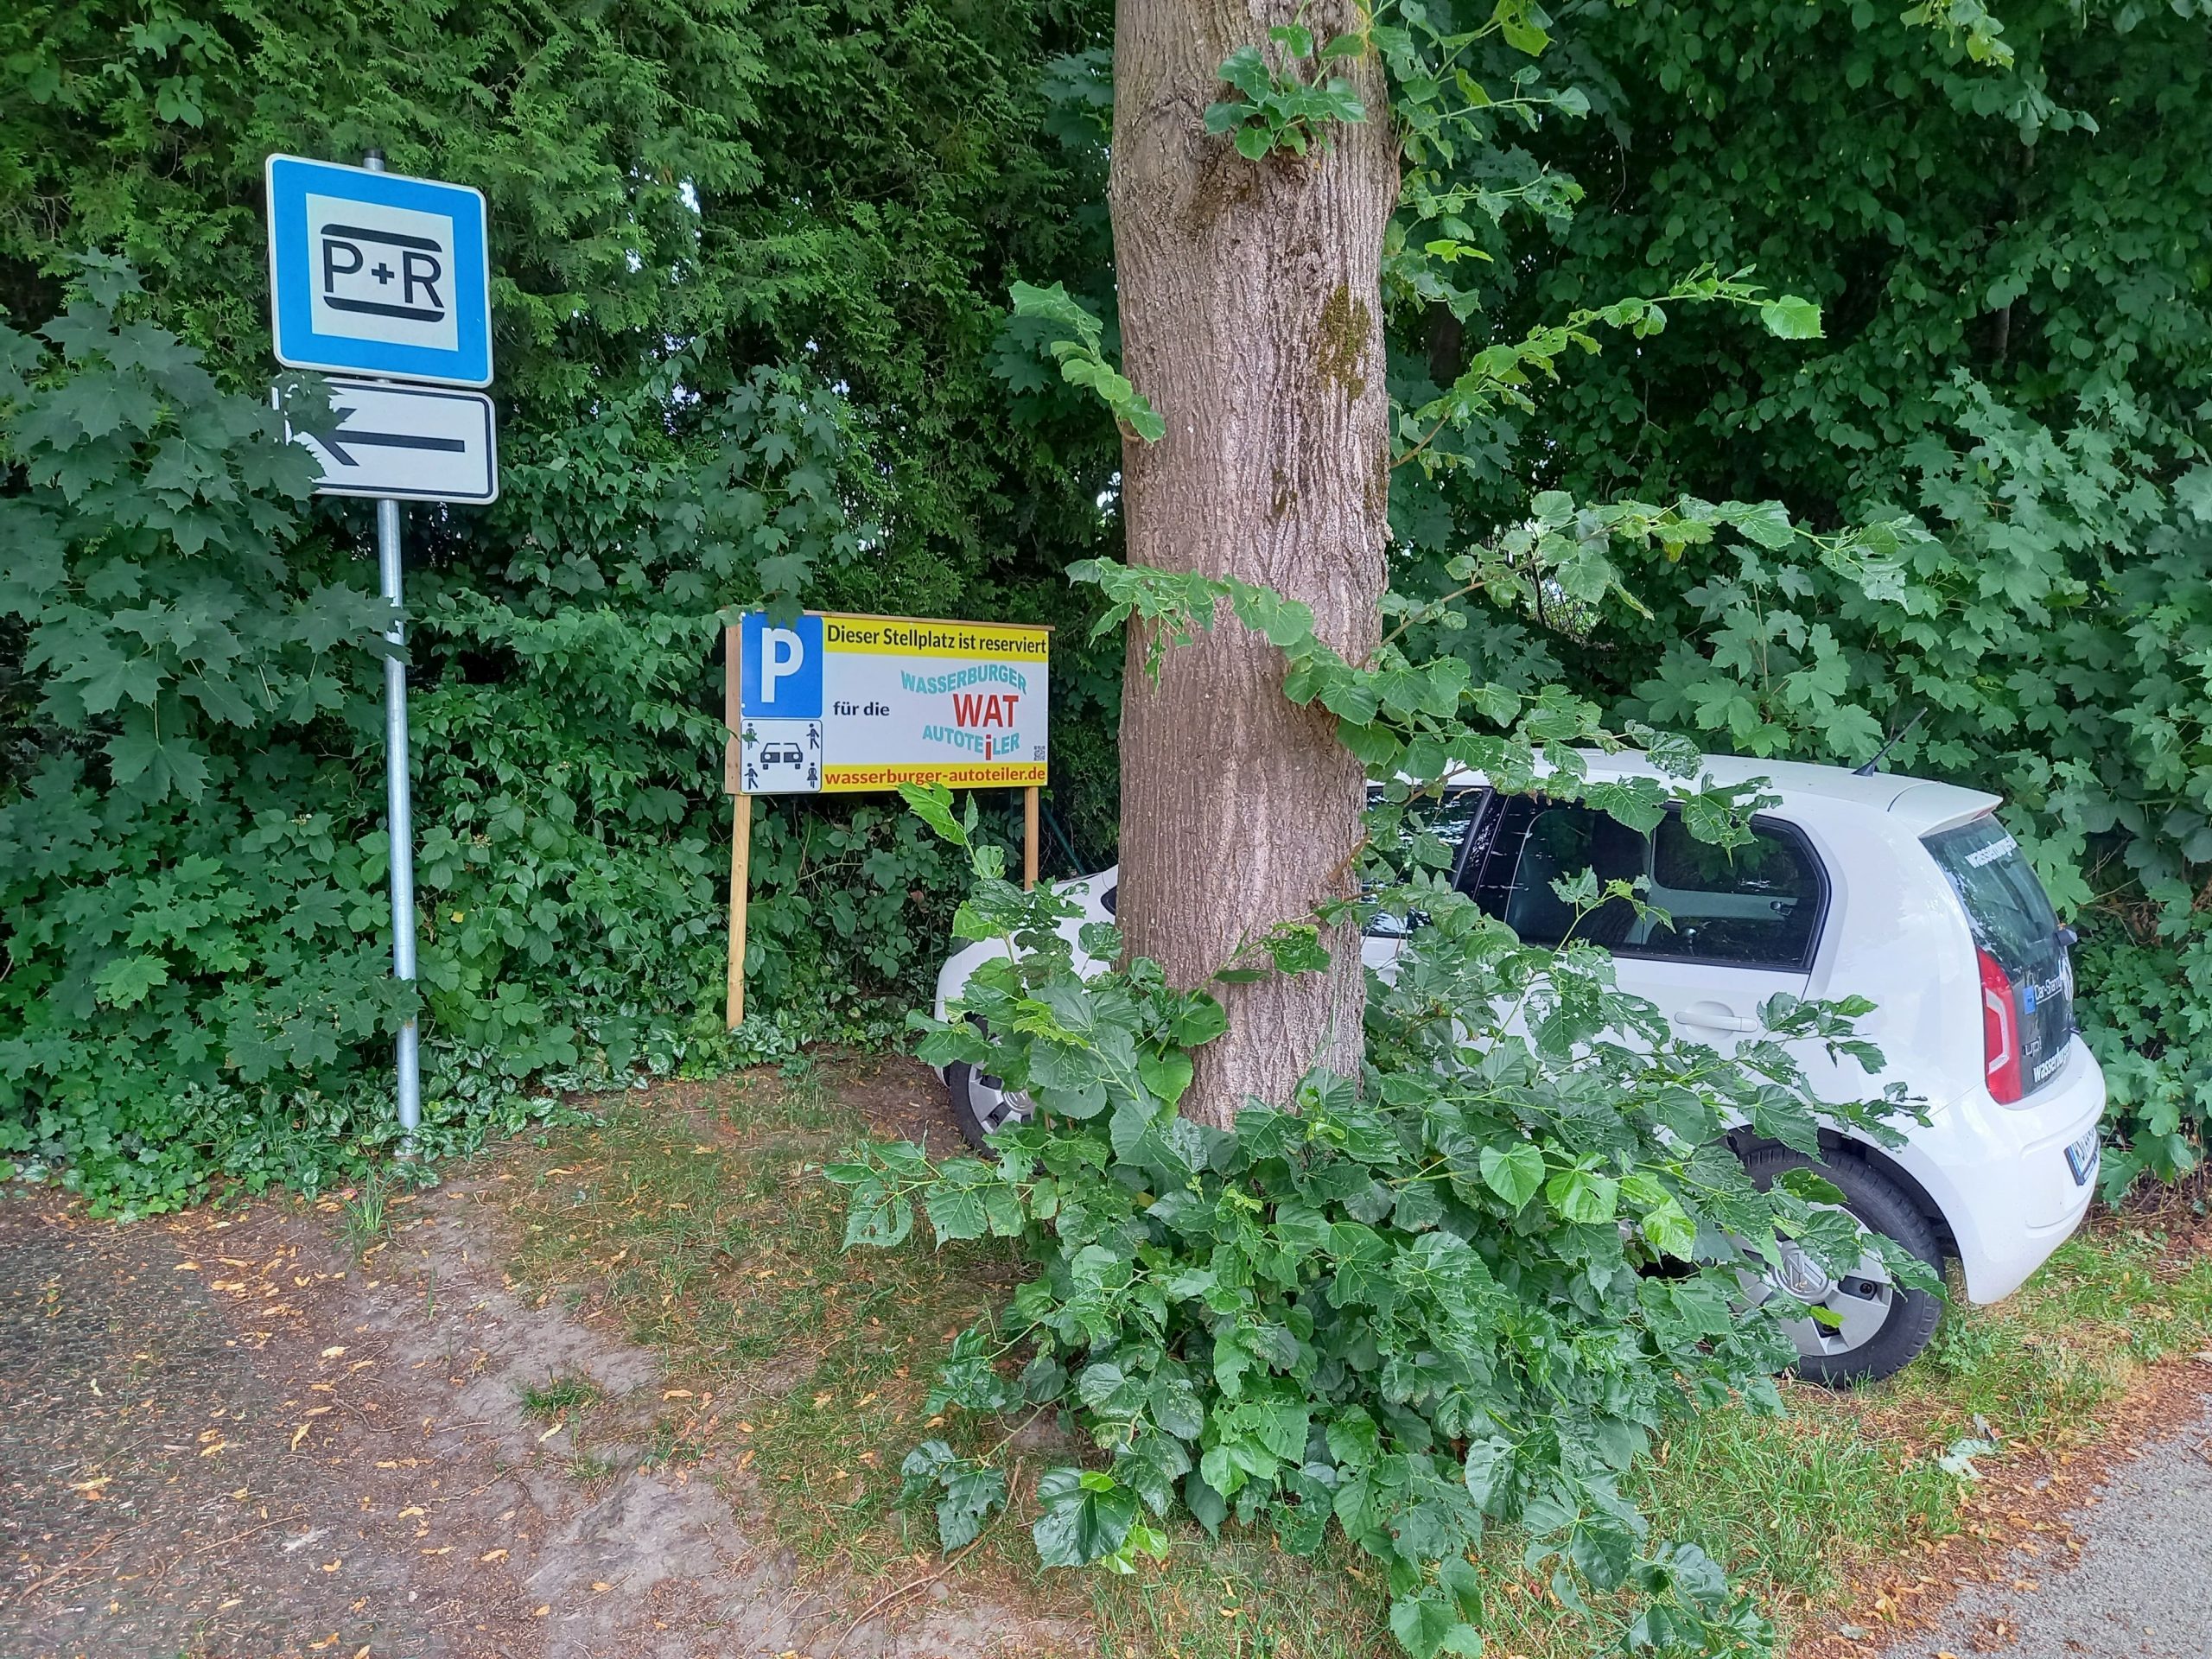 Am Bahnhof in Wasserburg-Reitmehring gibt es ein Carsharing-Fahrzeug - etwas stiefmütterlich wurde es zwischen Bäume und Büsche geparkt. Foto: Hildebrand/ACE